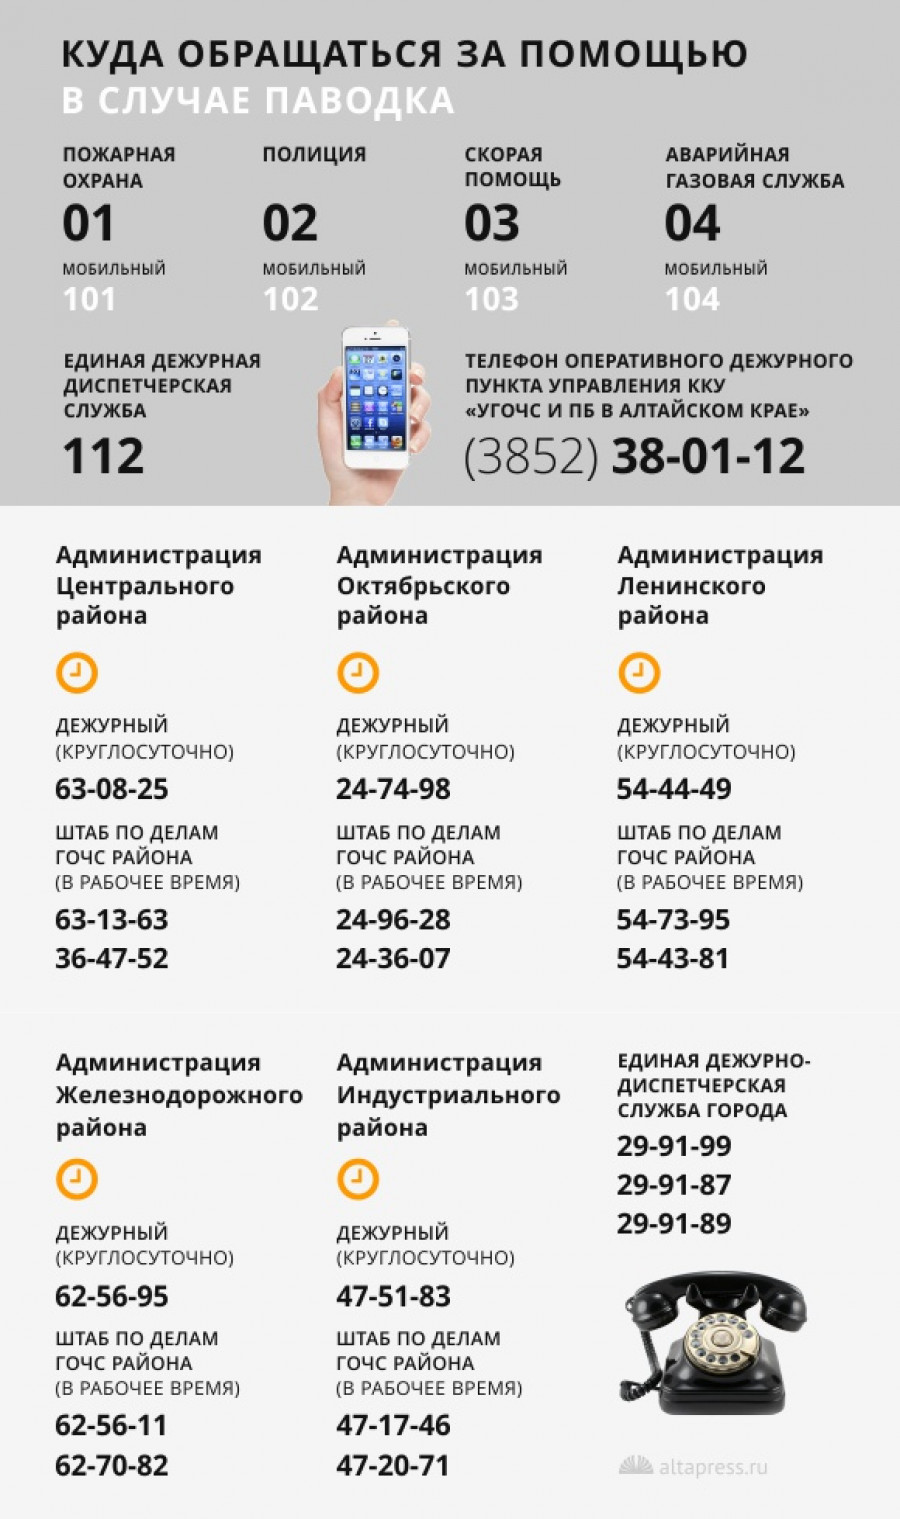 Список экстренных телефонов.